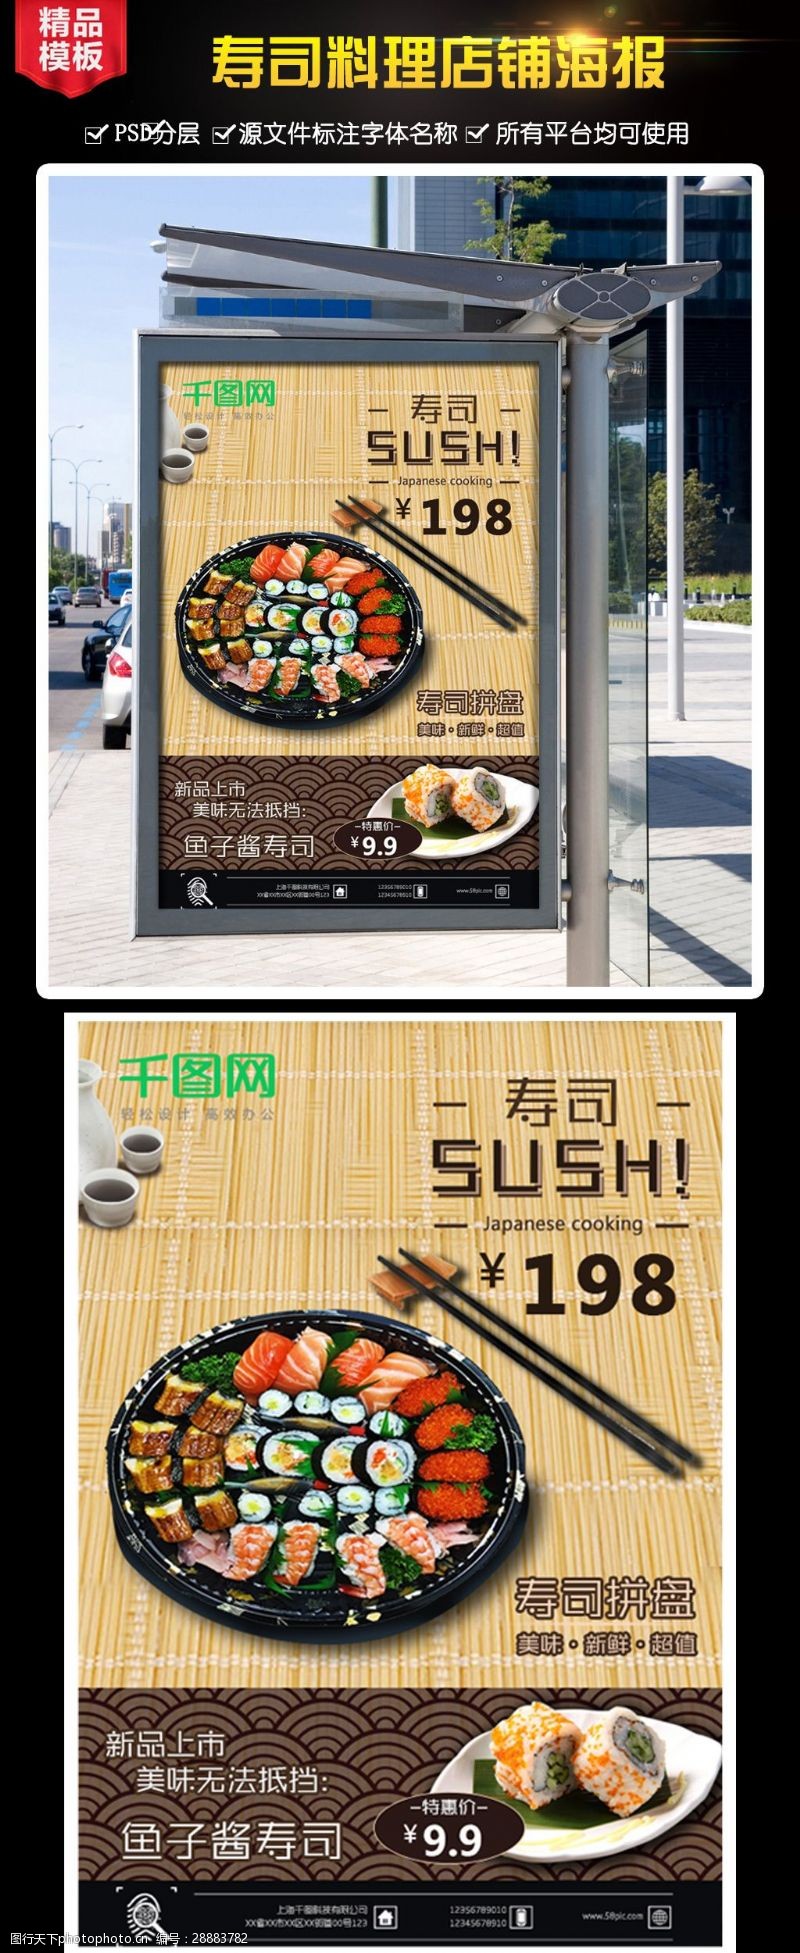 灯箱下载简单竹签背景寿司日料料理海报